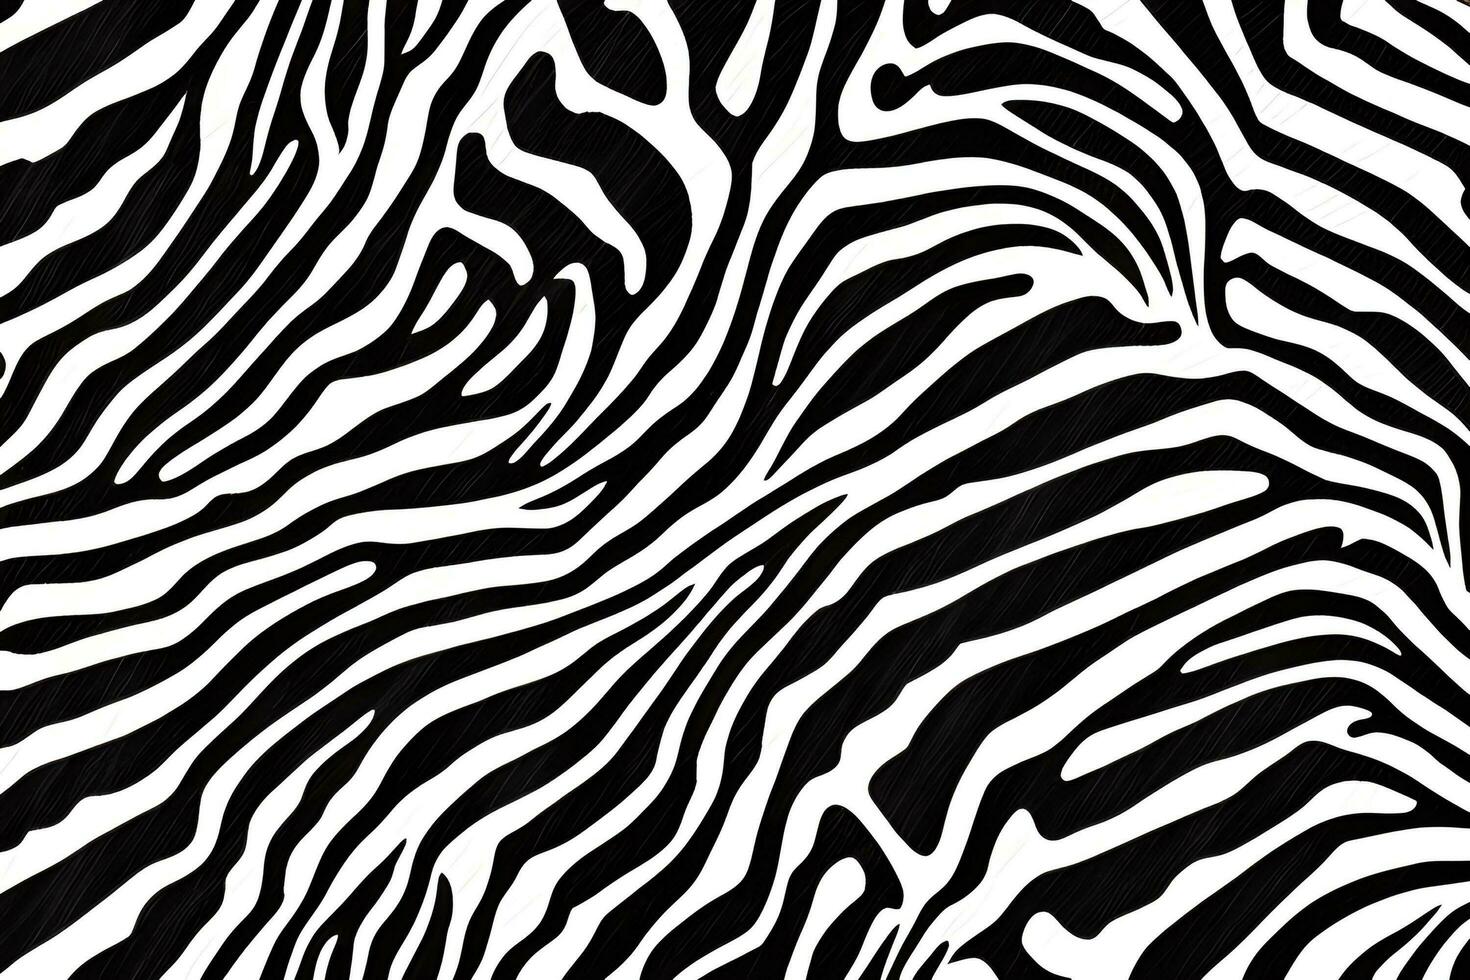 Zebra Skin Background, Zebra Skin Texture, AI Generative photo